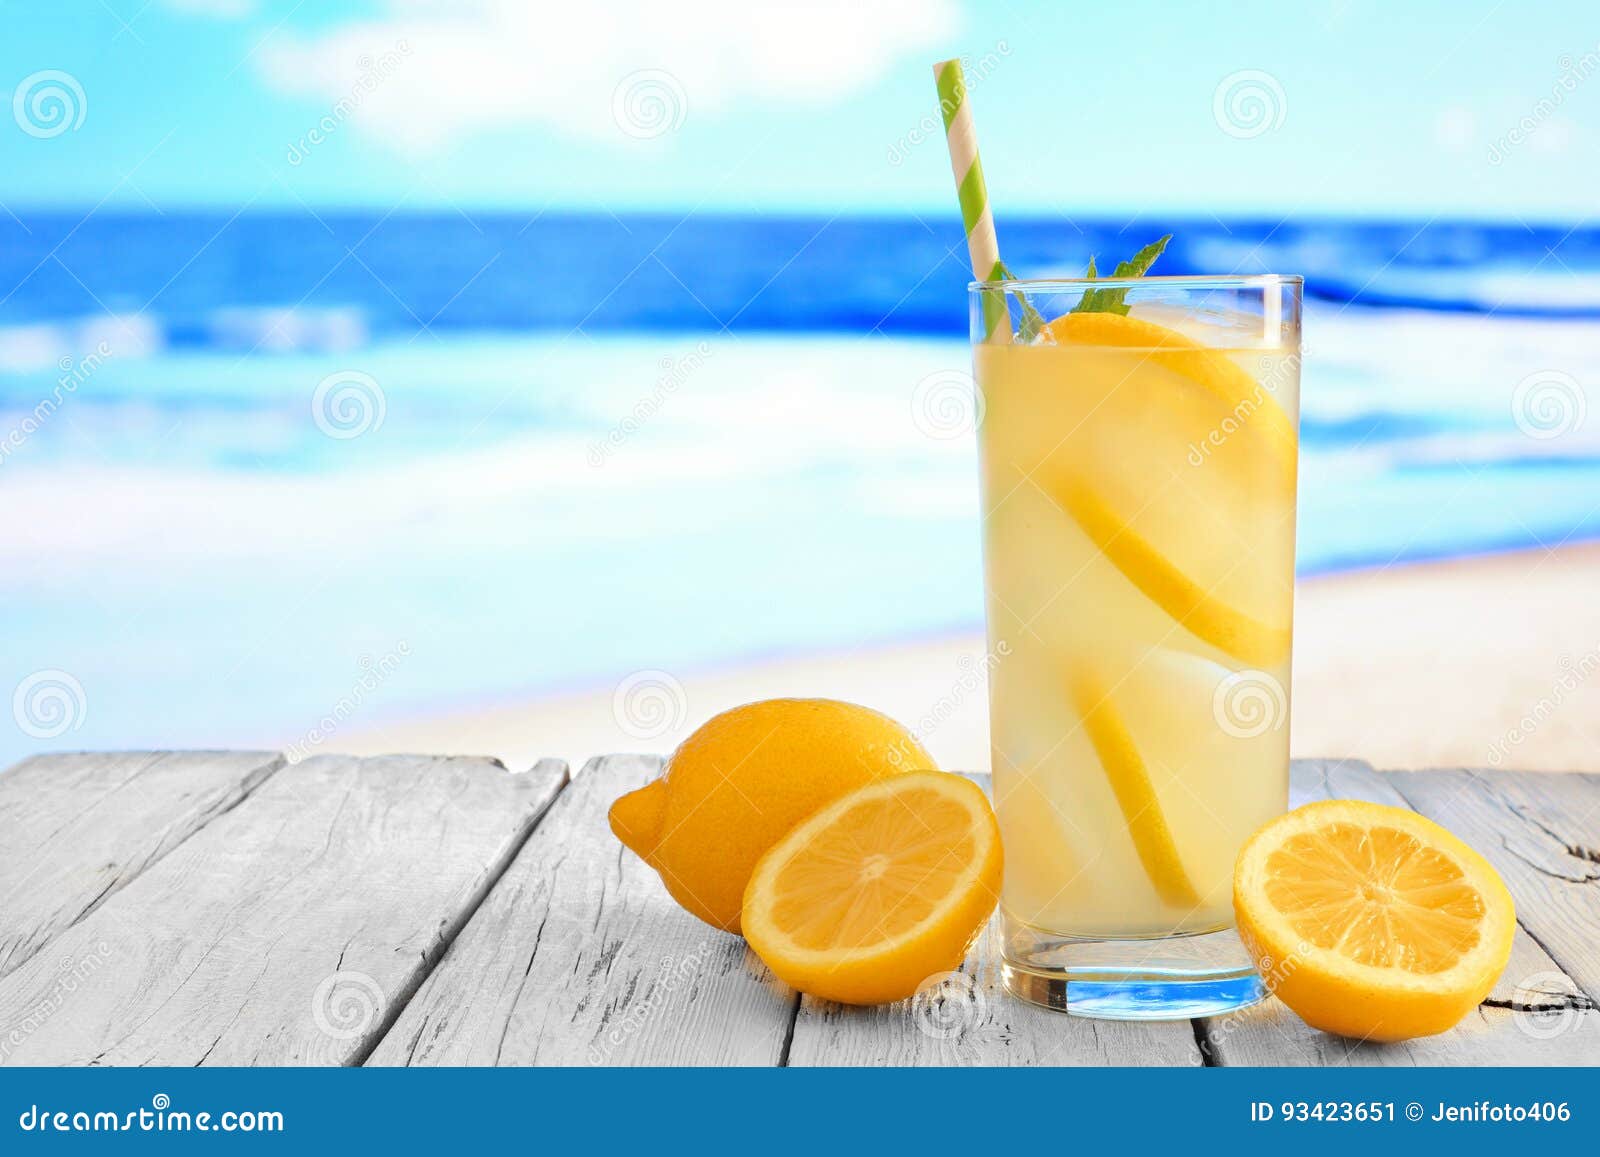 Glass Of Lemonade Against A Vibrant Blue Ocean Background